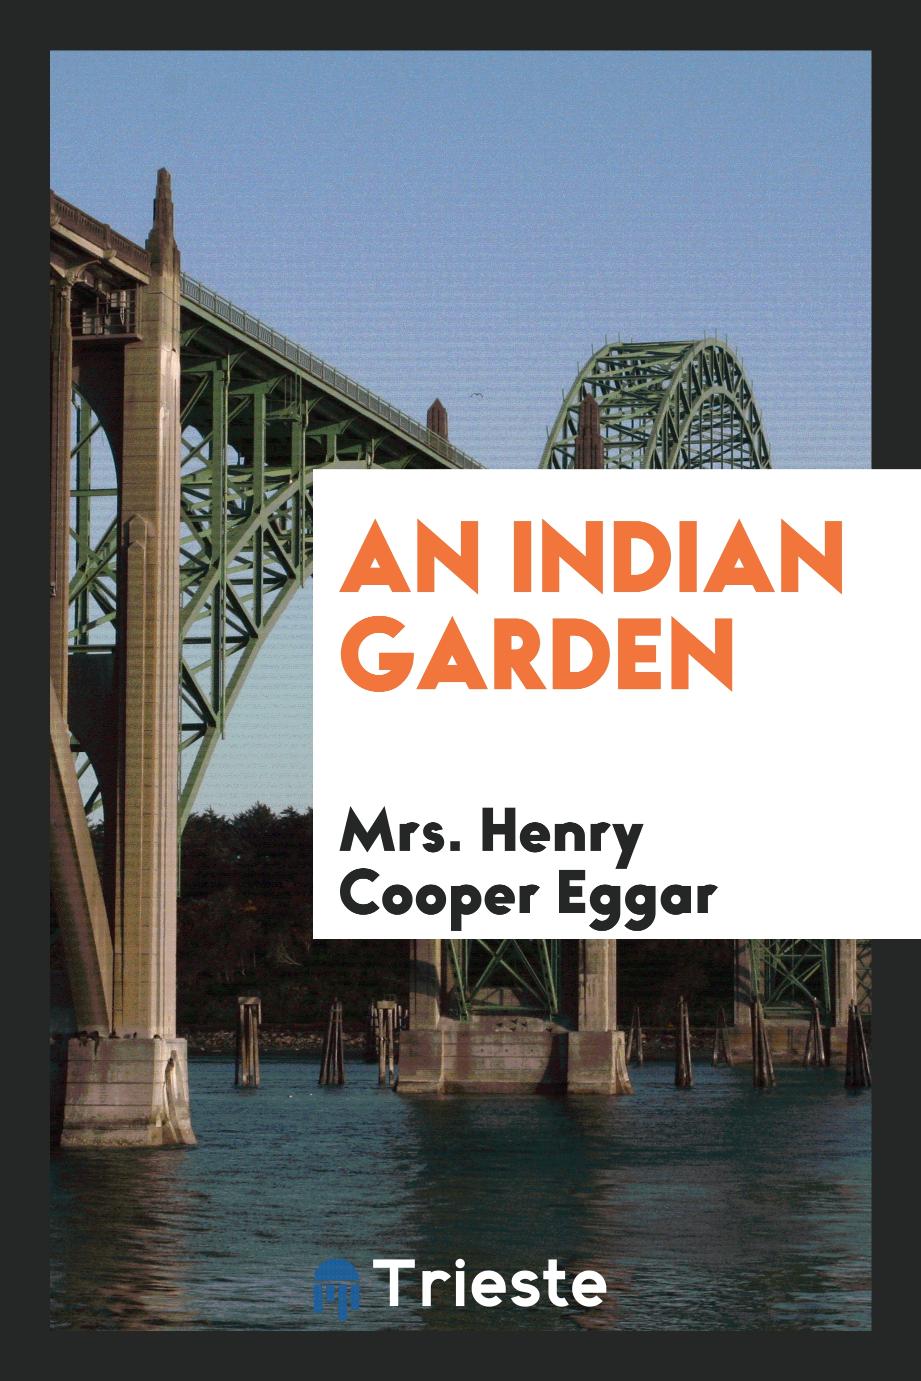 An Indian garden